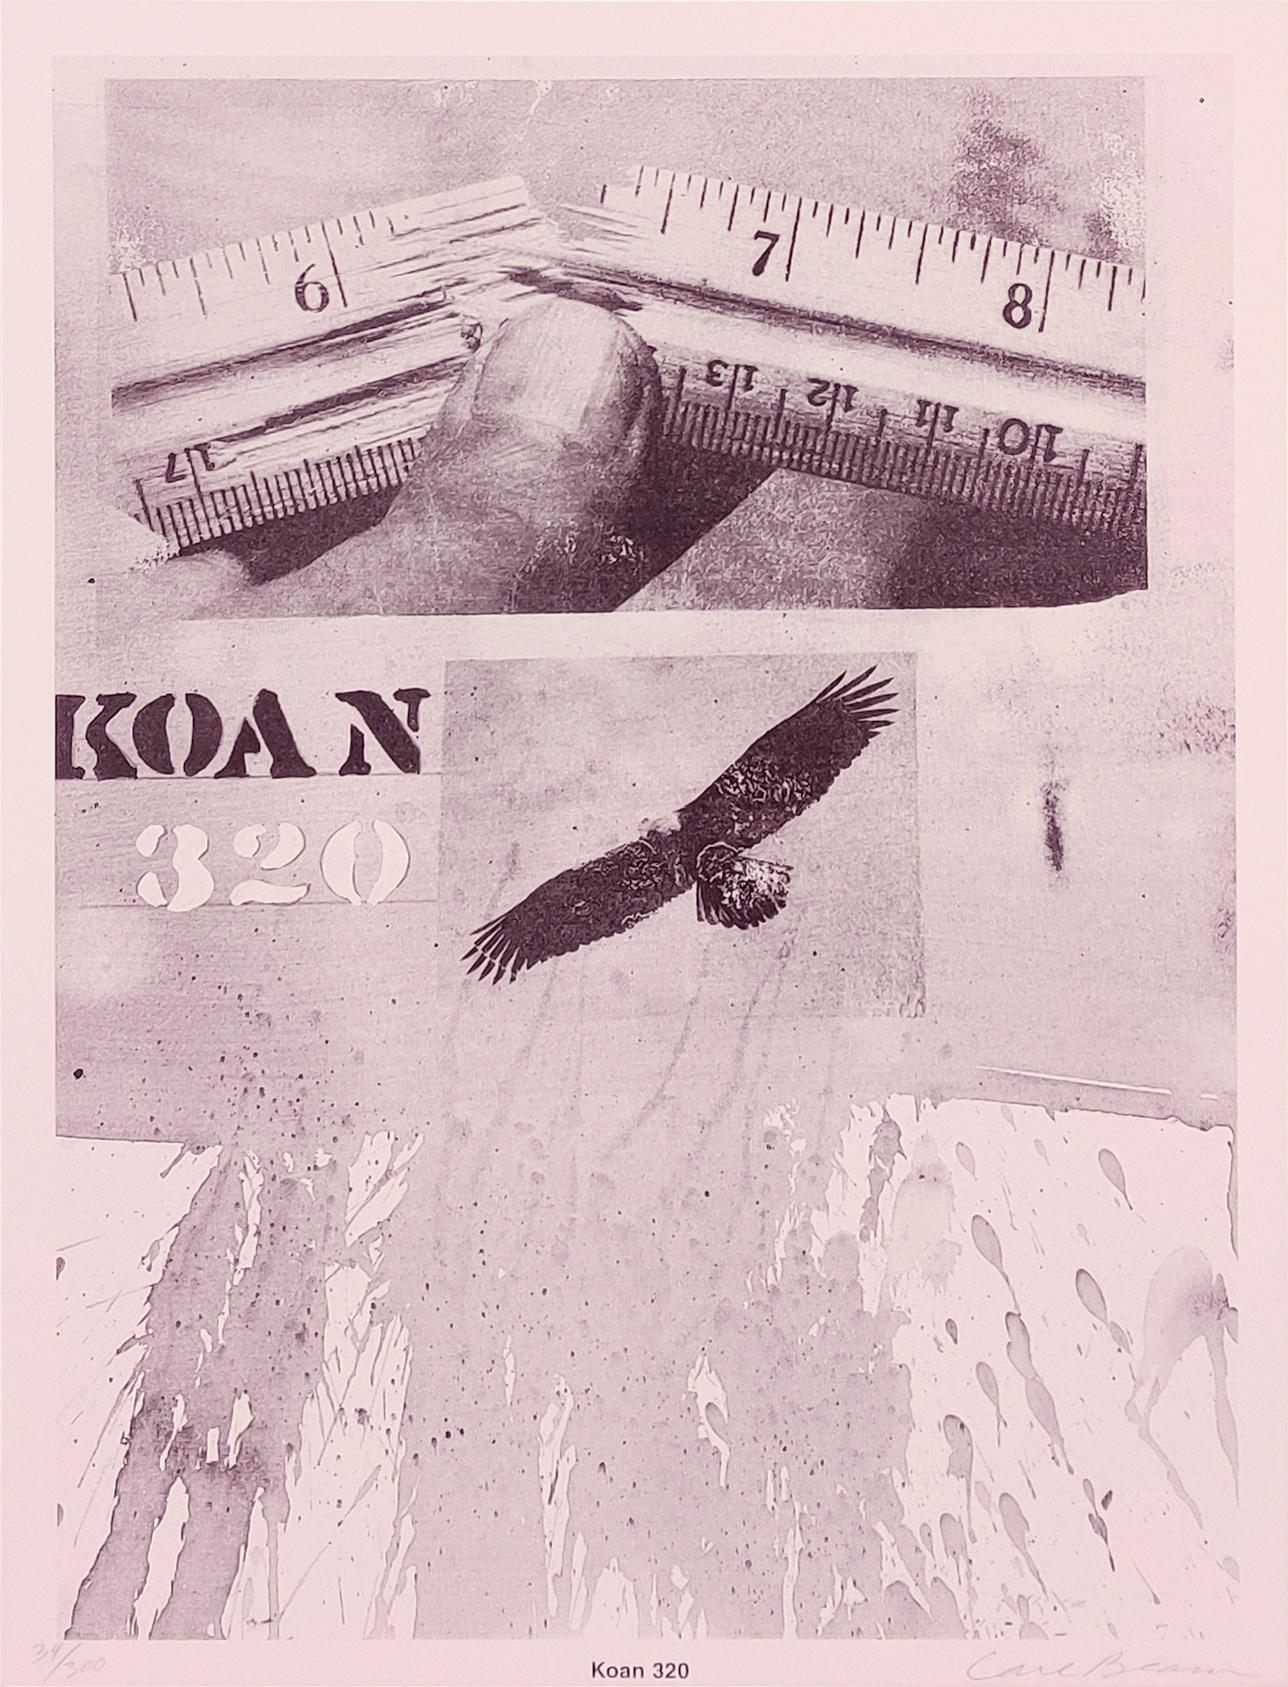 KOAN 320, collection KOAN